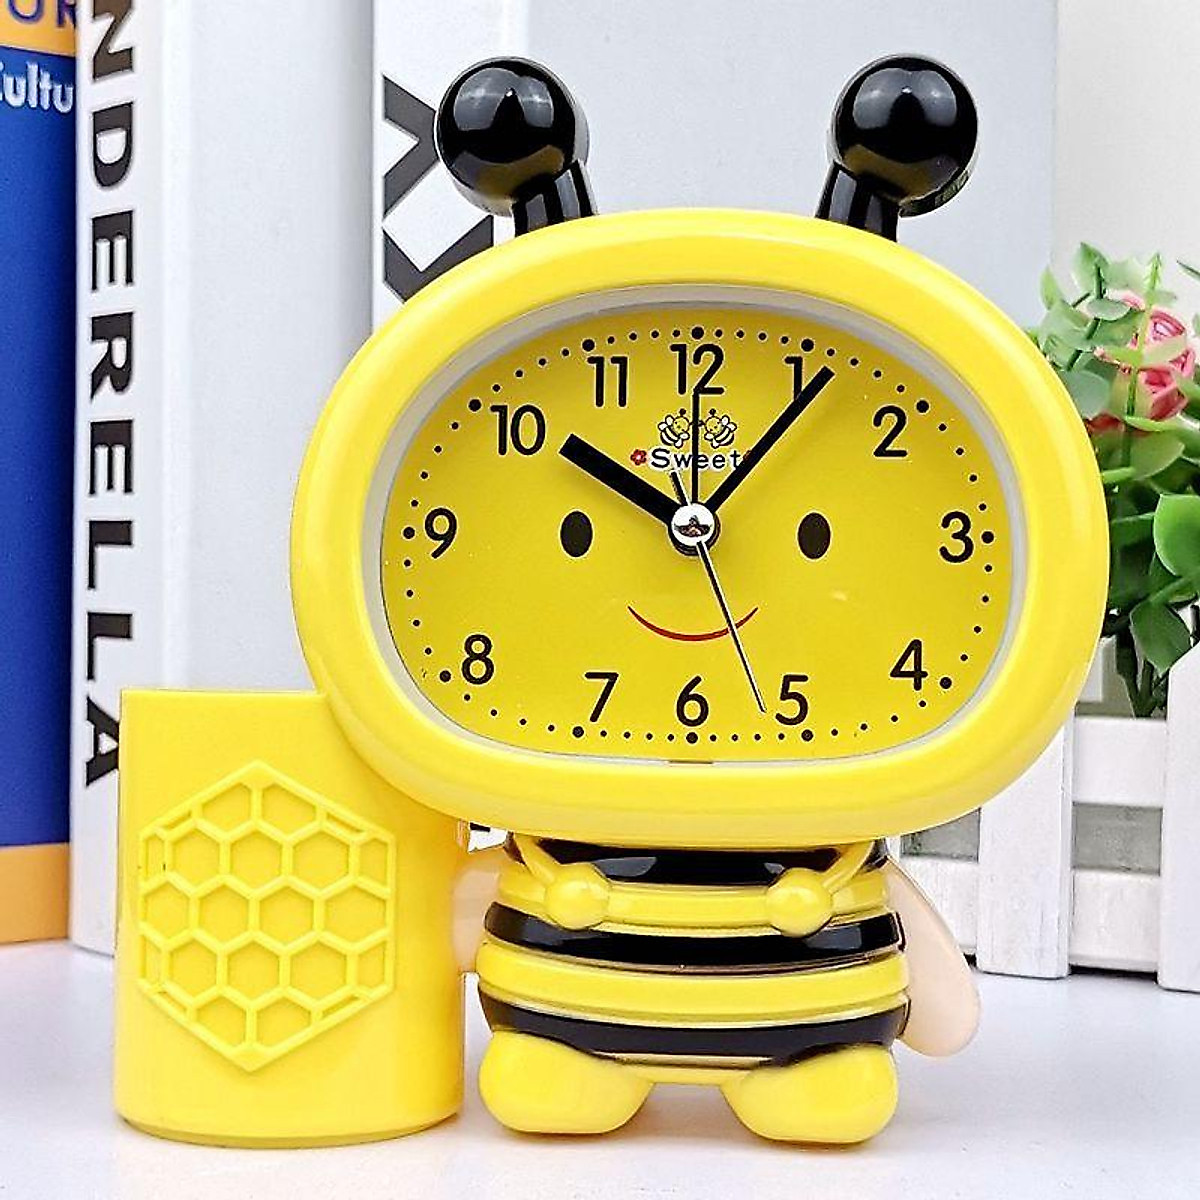 Đồng hồ báo thức hình con ong cho bé kiểu đồng hồ để bàn báo thức